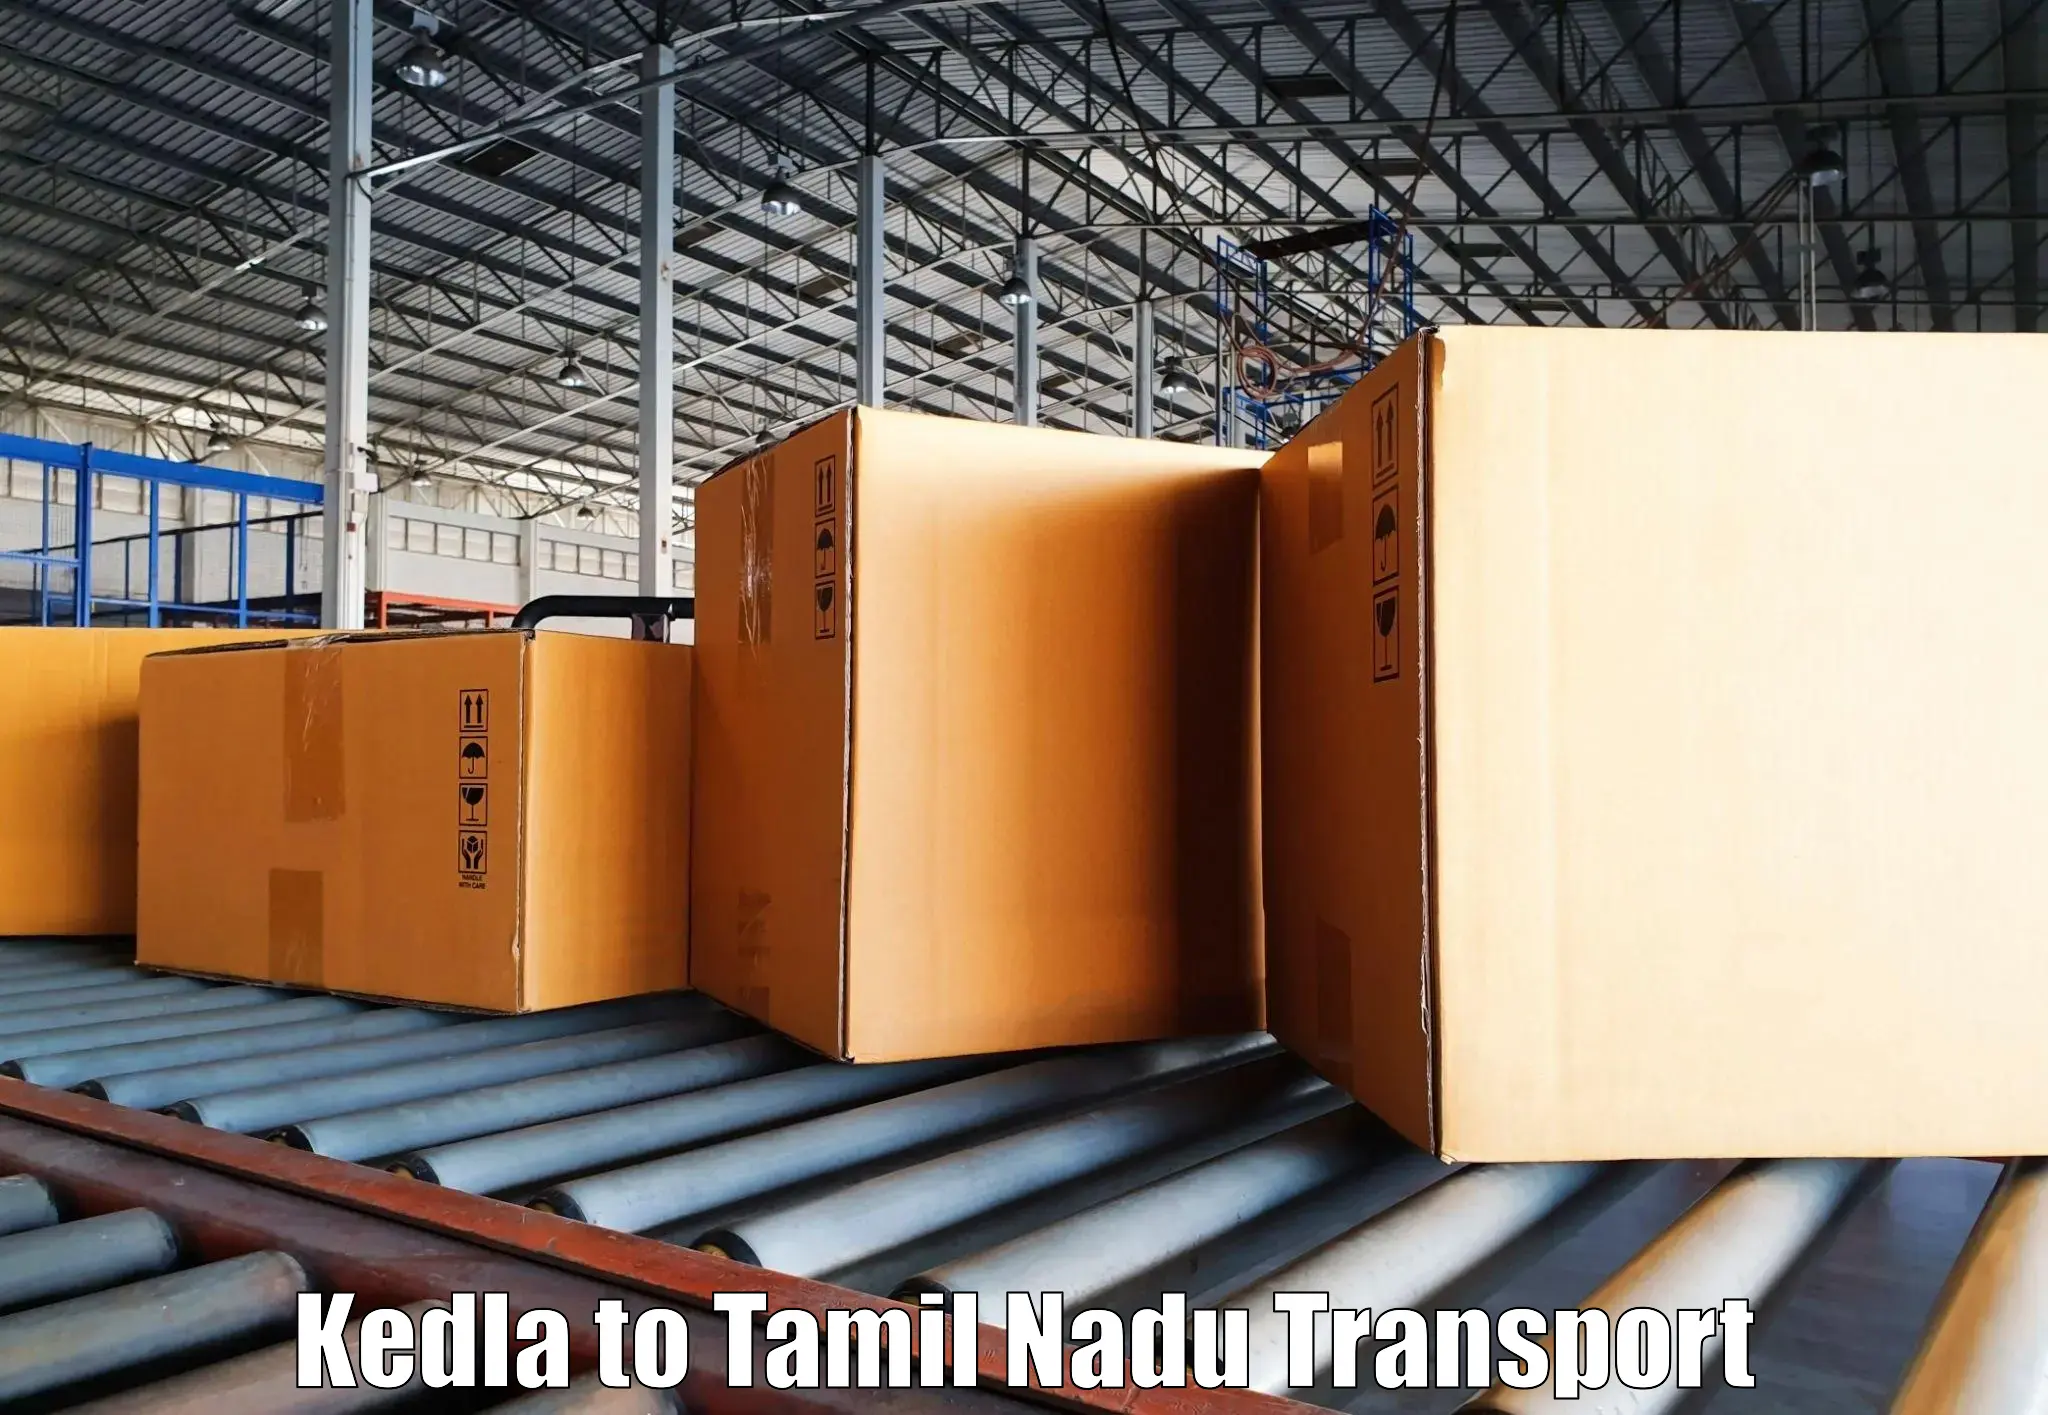 Material transport services Kedla to Thiruvadanai